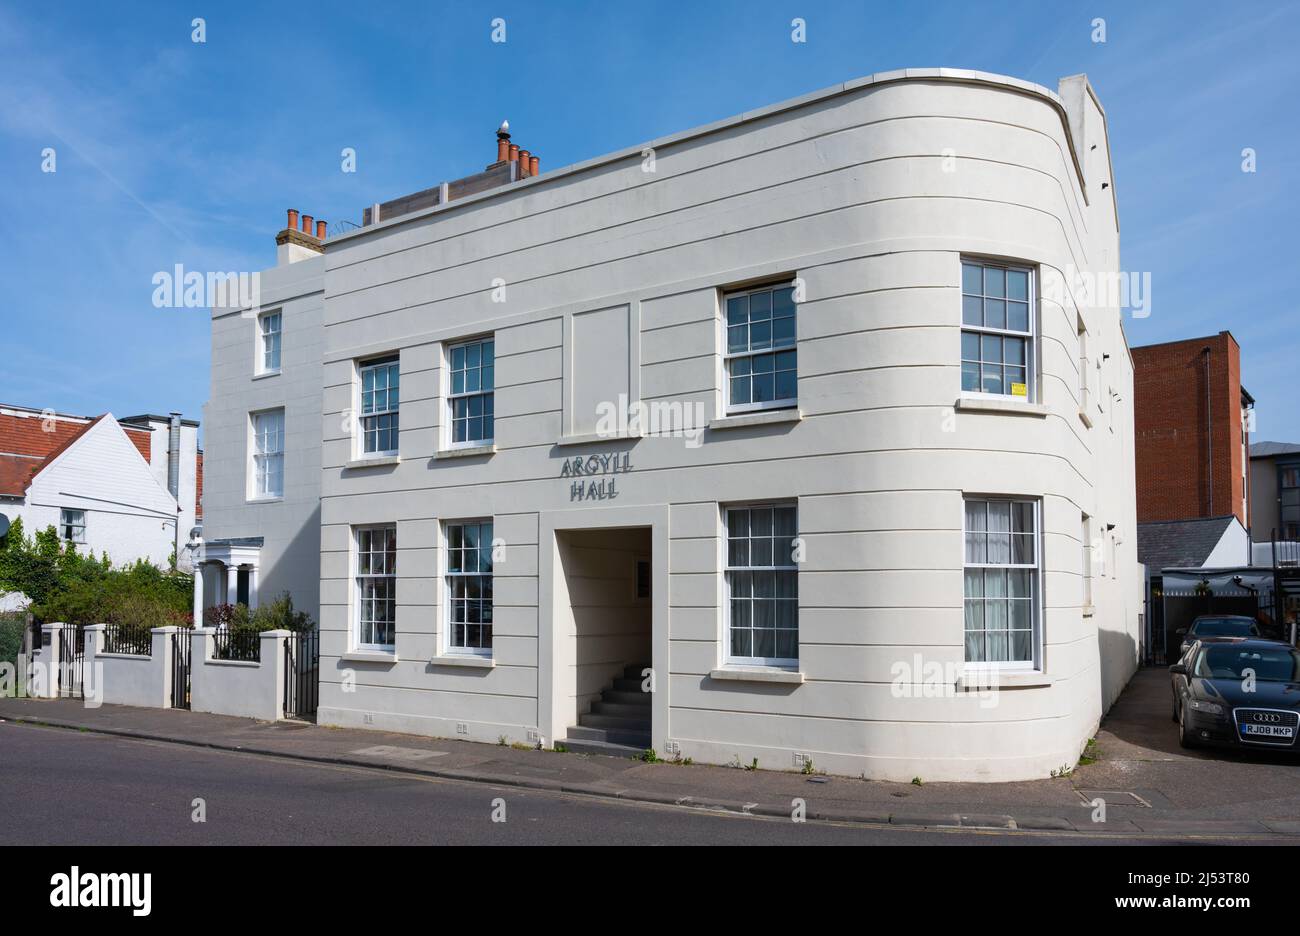 Argyll Hall, ein Block mit 5 Apartments oder Wohnungen in einem modernen weißen Gebäude in Littlehampton, West Sussex, England, Großbritannien. Stockfoto